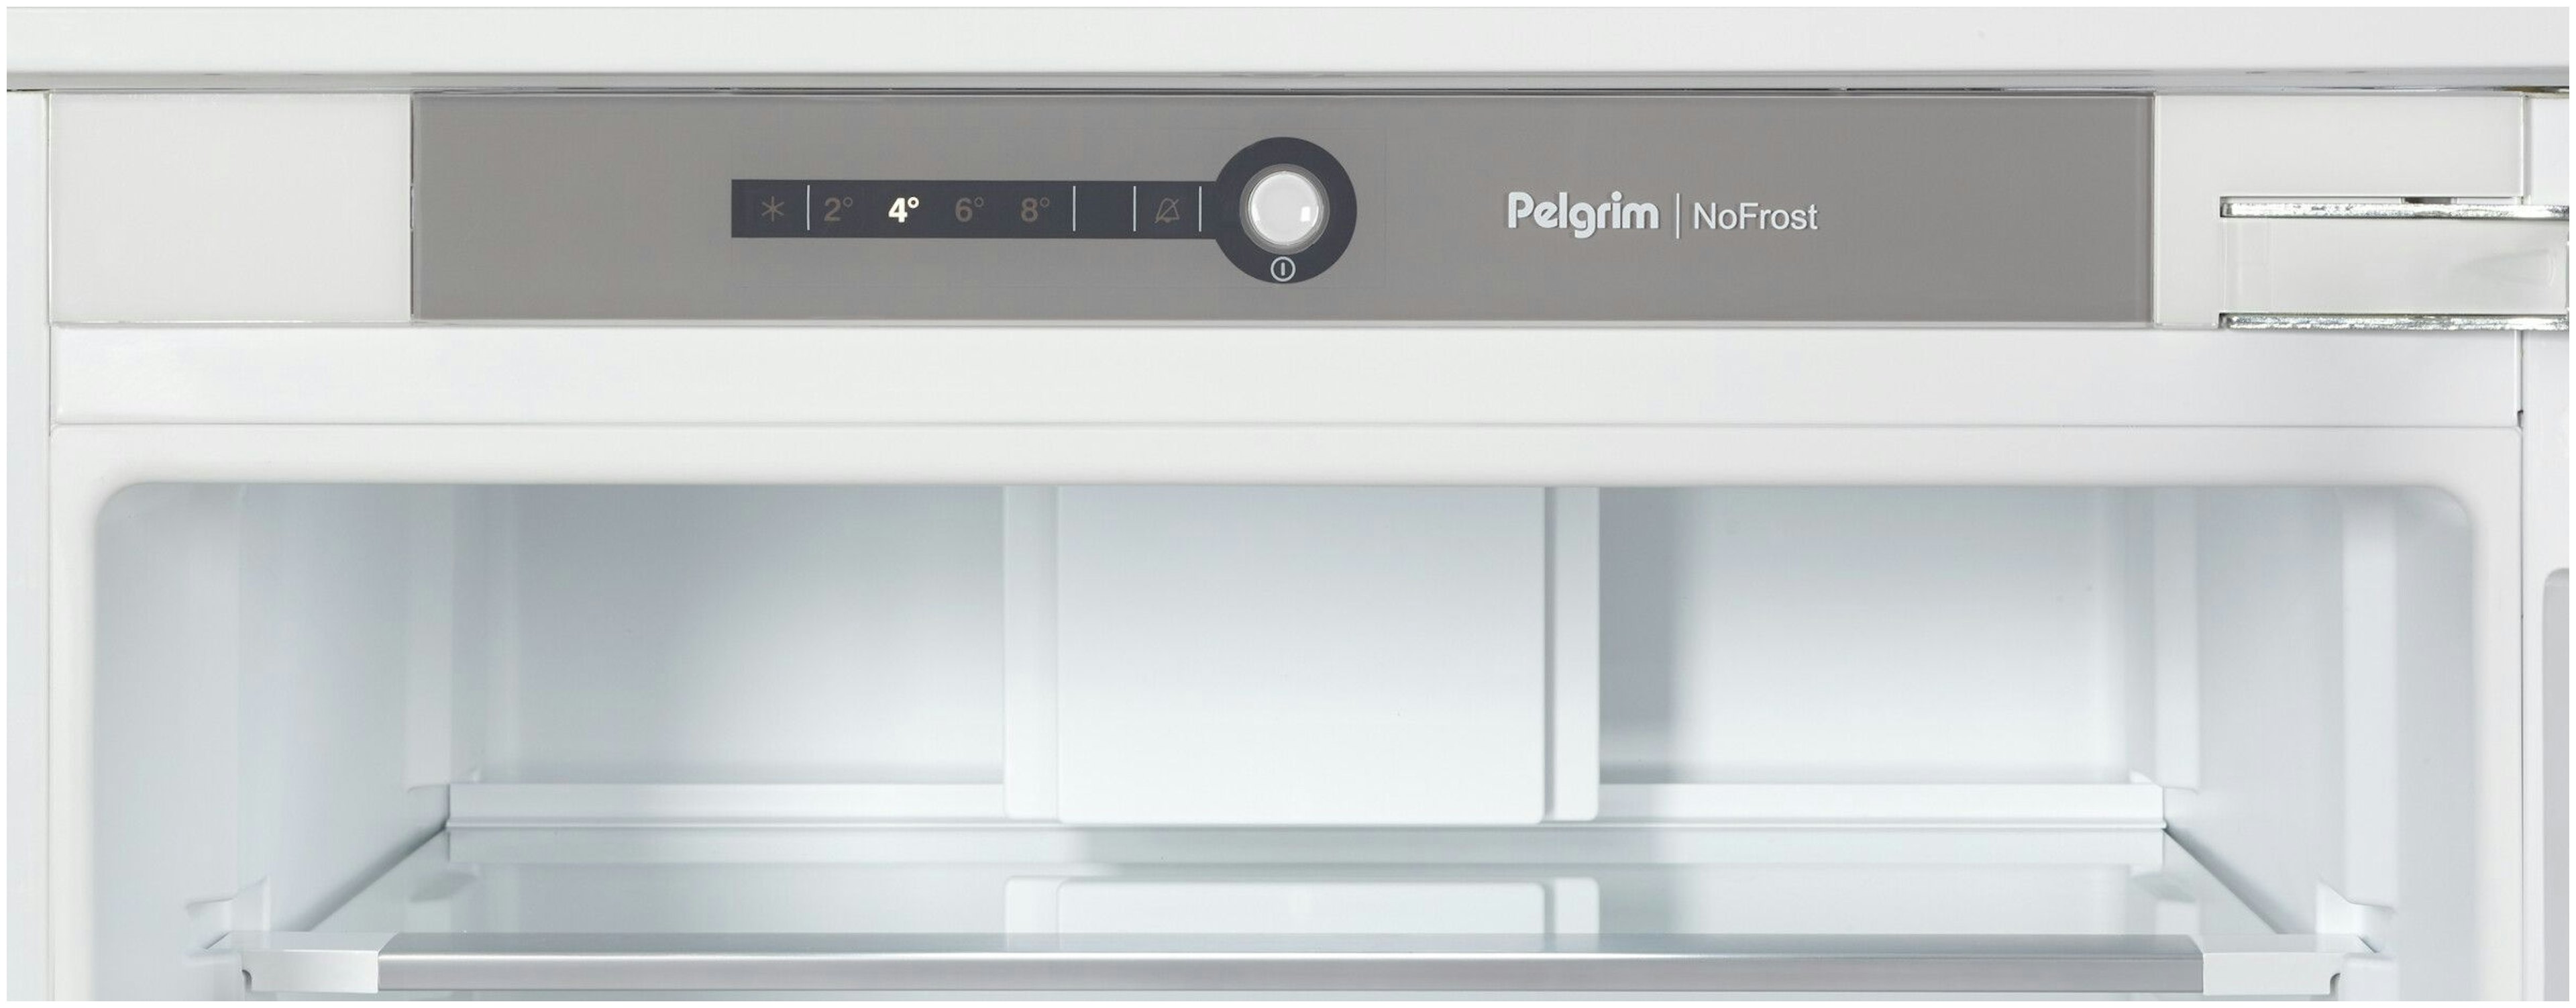 Pelgrim koelkast PCD26178N afbeelding 3